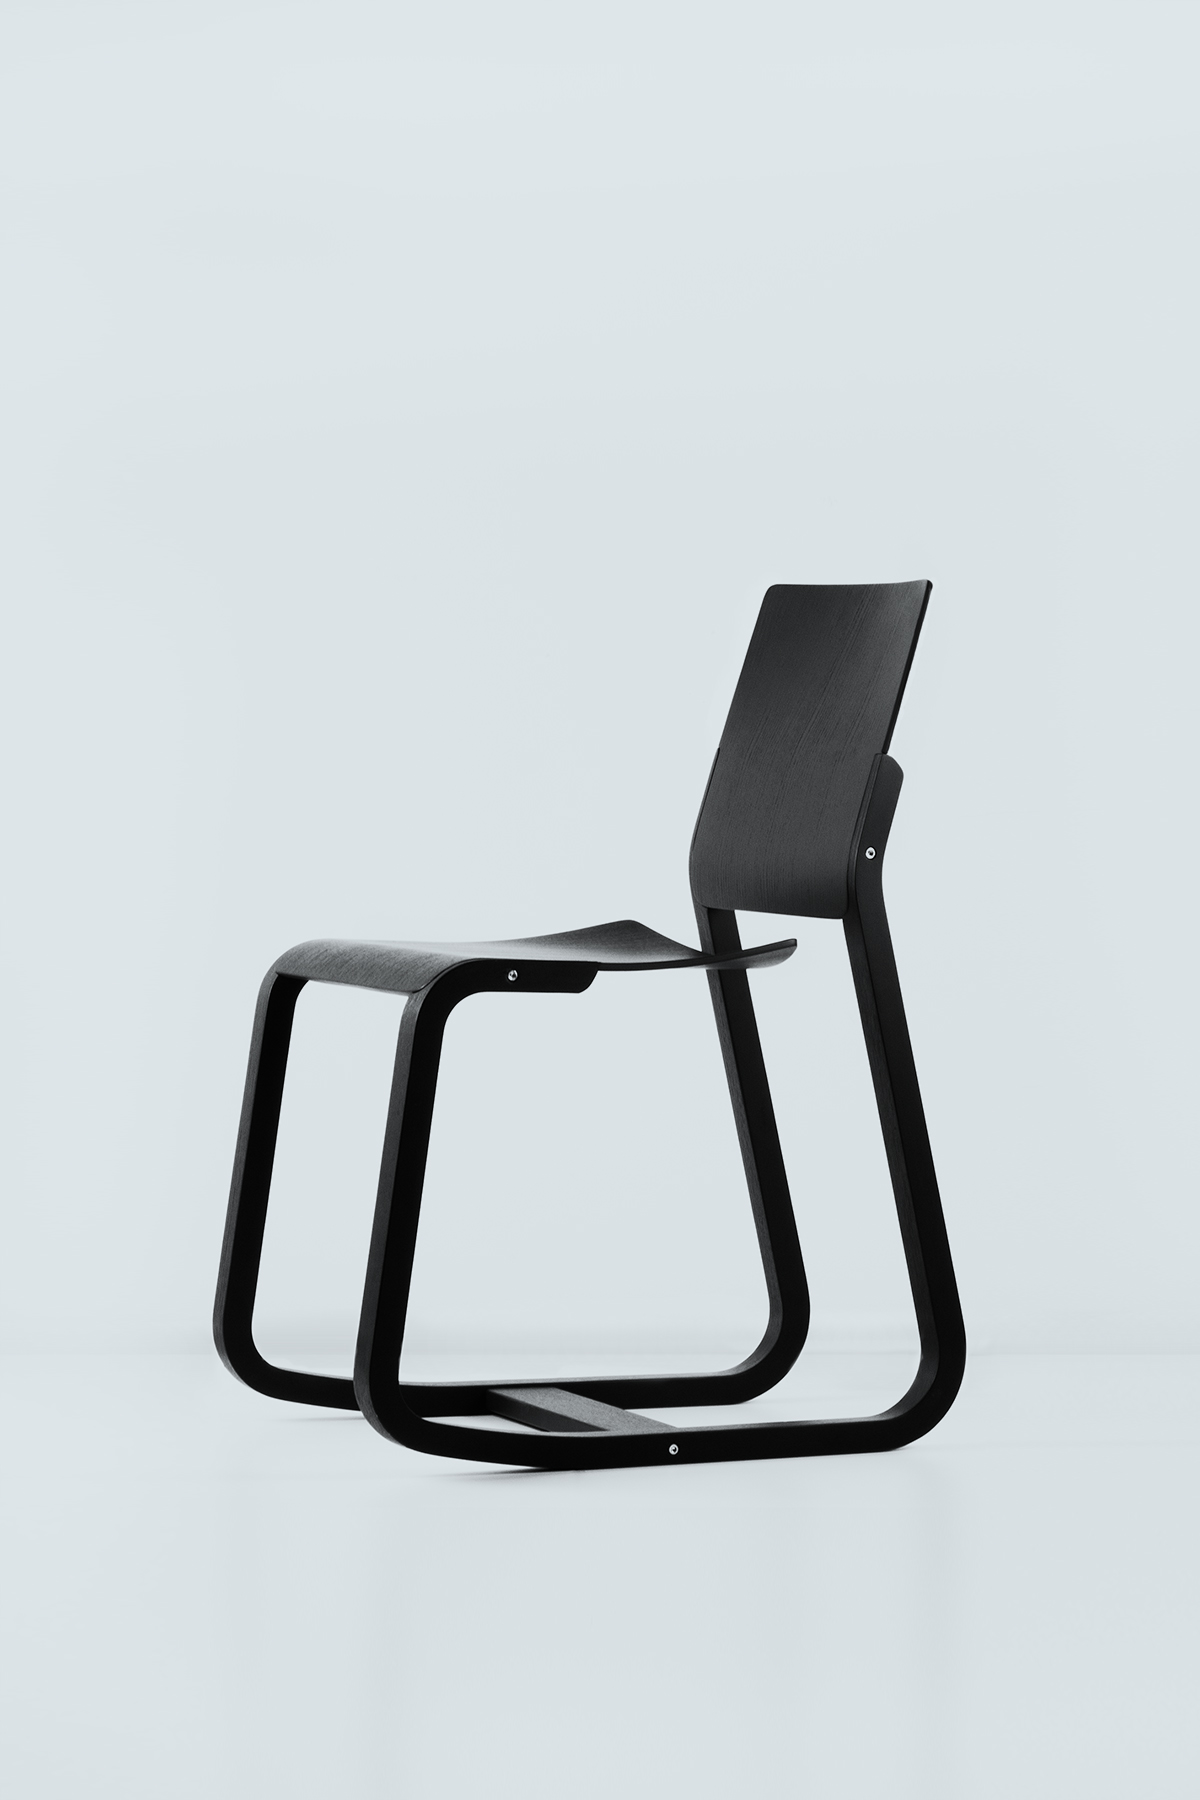 Loid Chair by Geckeler Michels